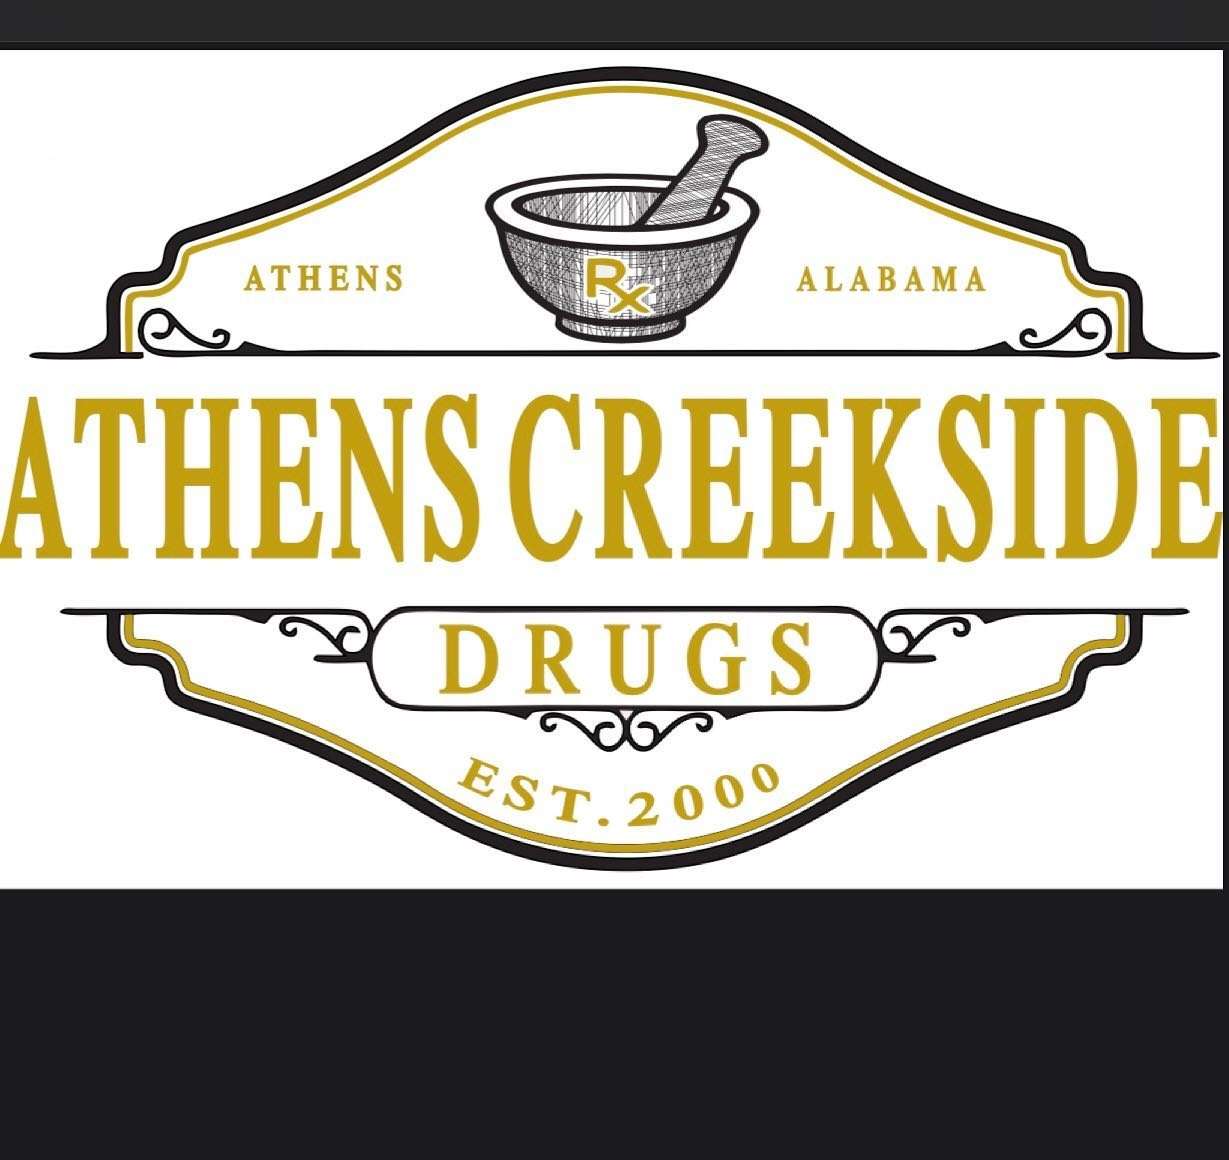 Athens Creekside Drugs, LLC Logo